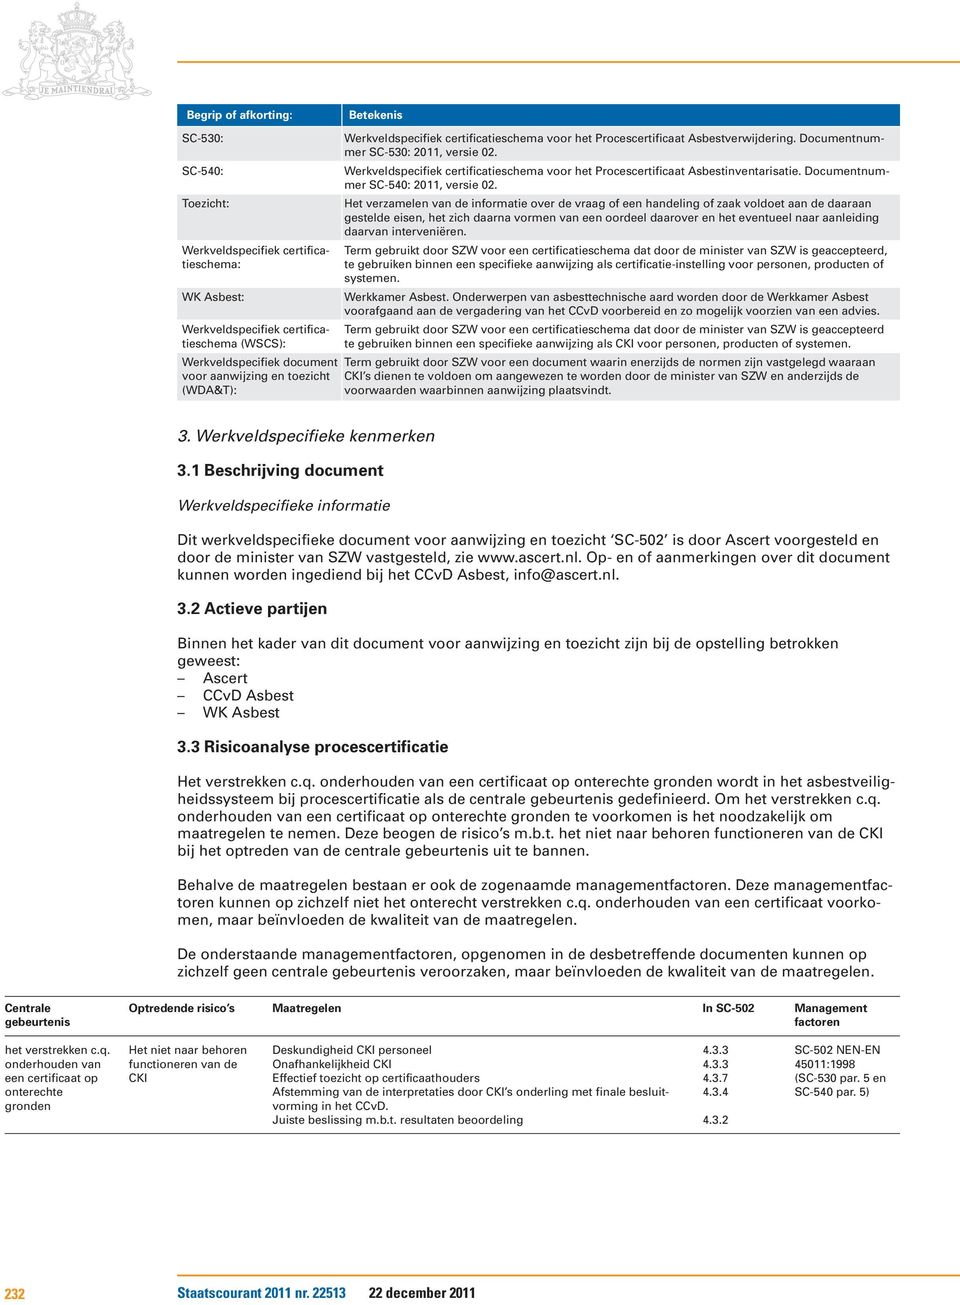 Werkveldspecifiek certificatieschema voor het Procescertificaat Asbestinventarisatie. Documentnummer SC-540: 2011, versie 02.